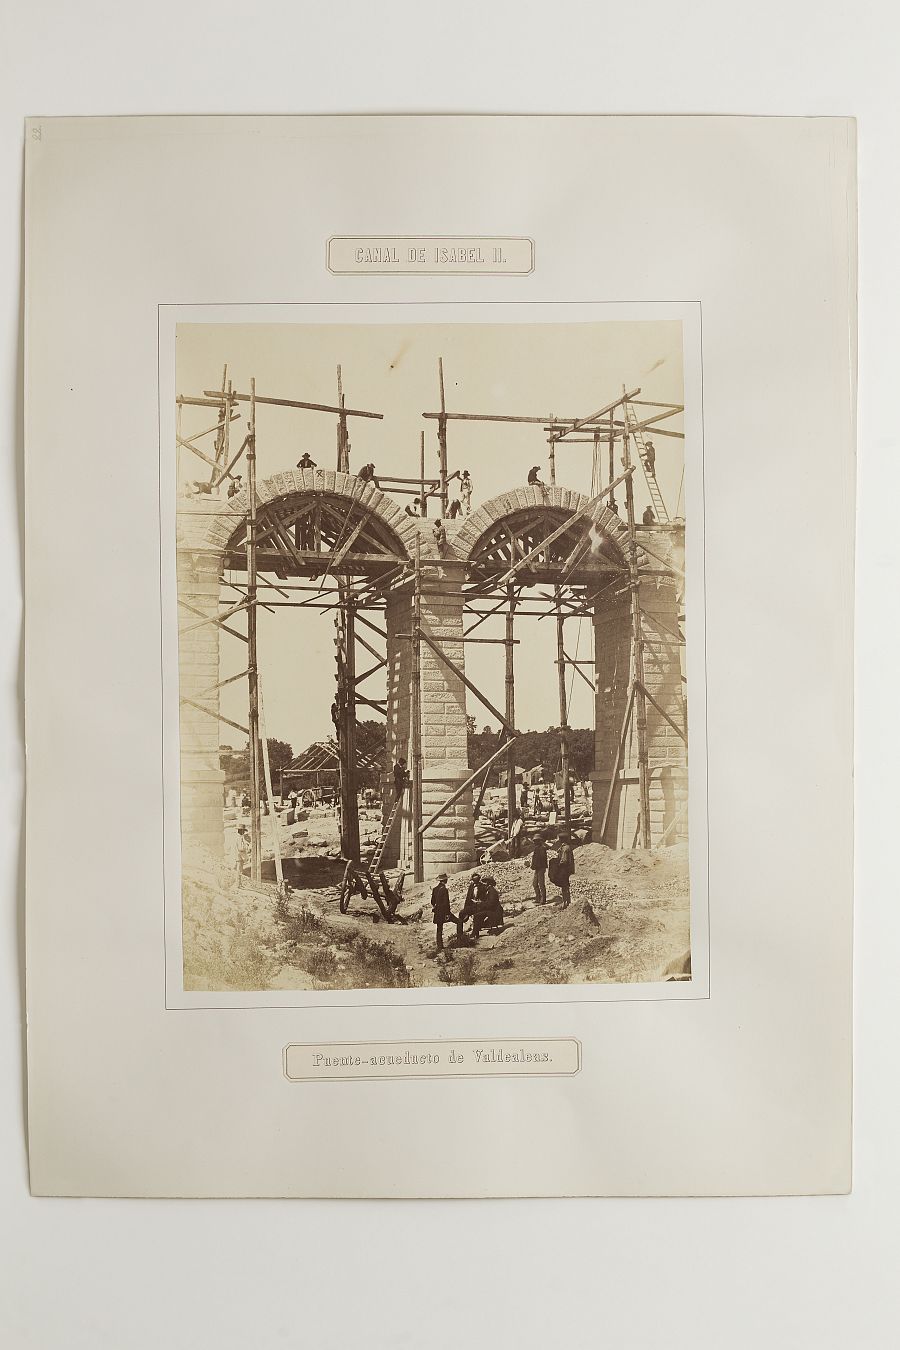 Puente acueducto de Valdealeas (1858). Charles Clifford.